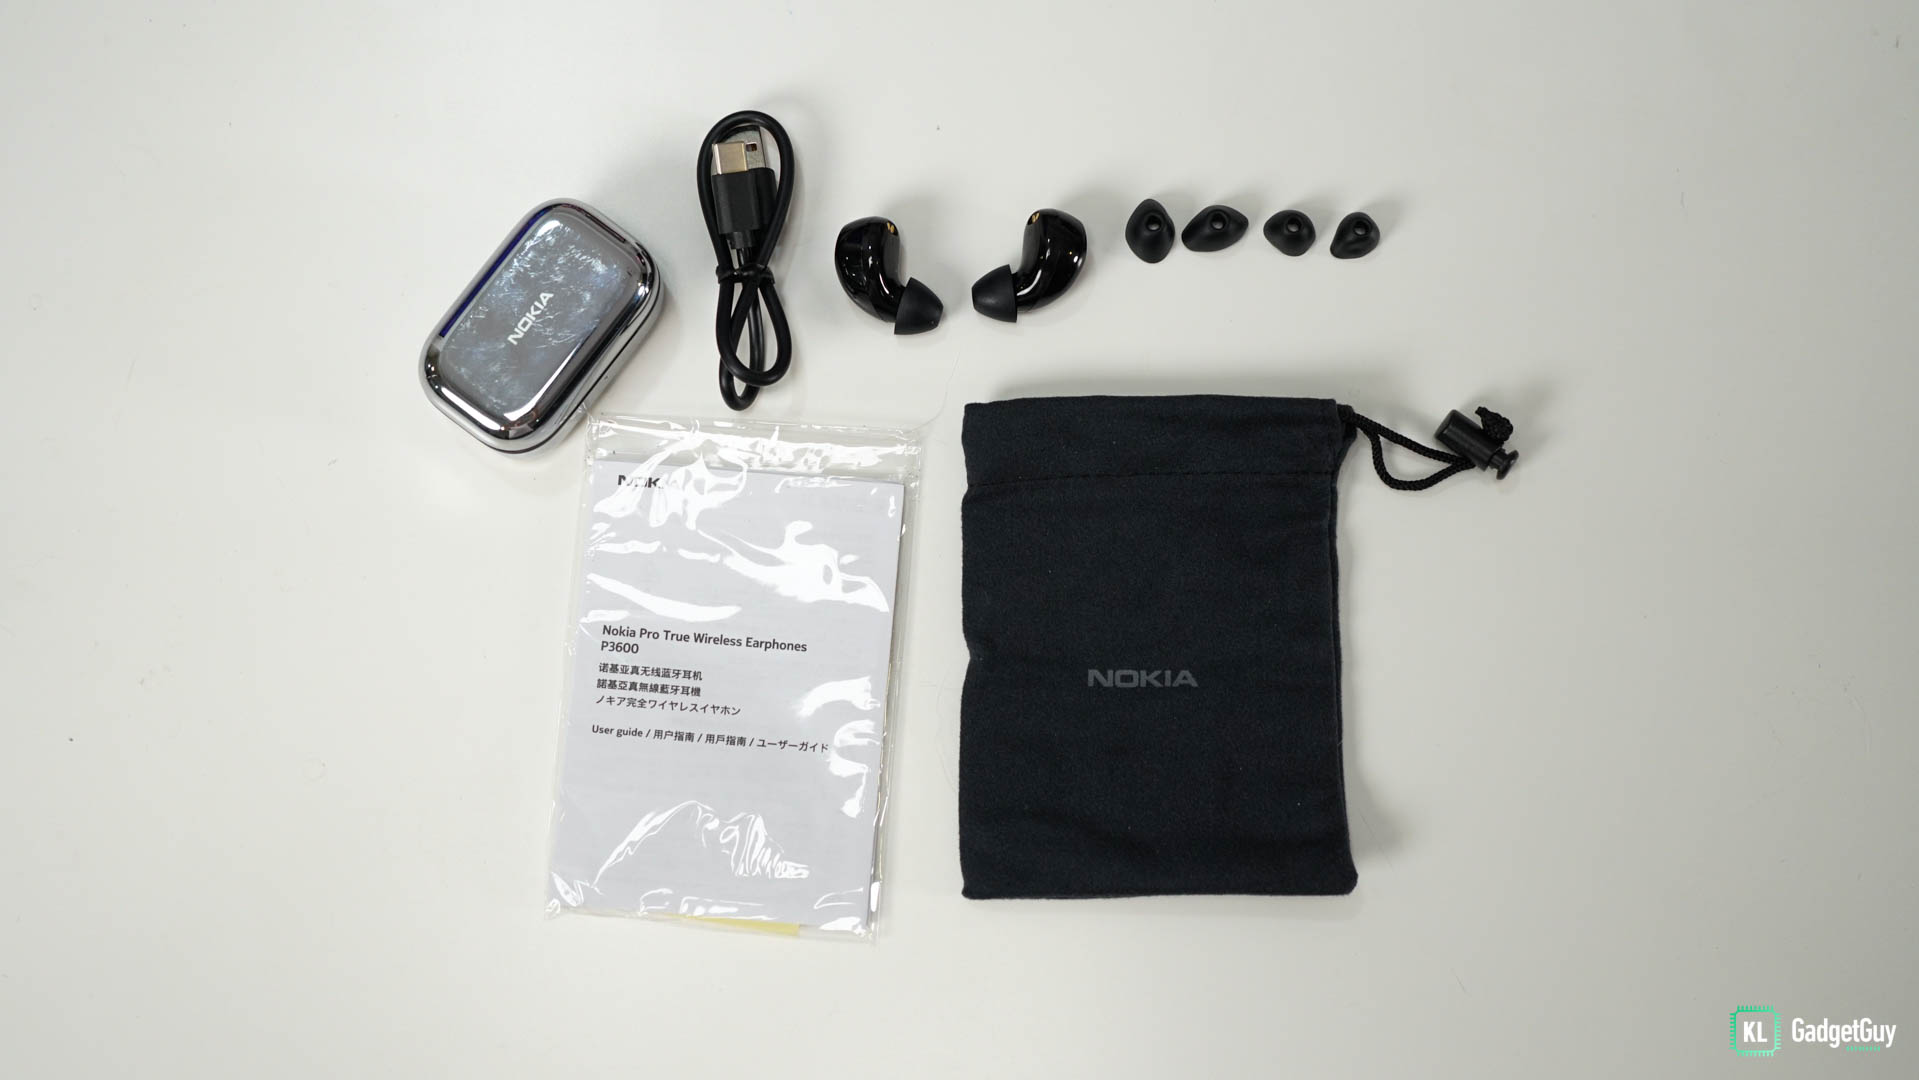 Nokia P3600